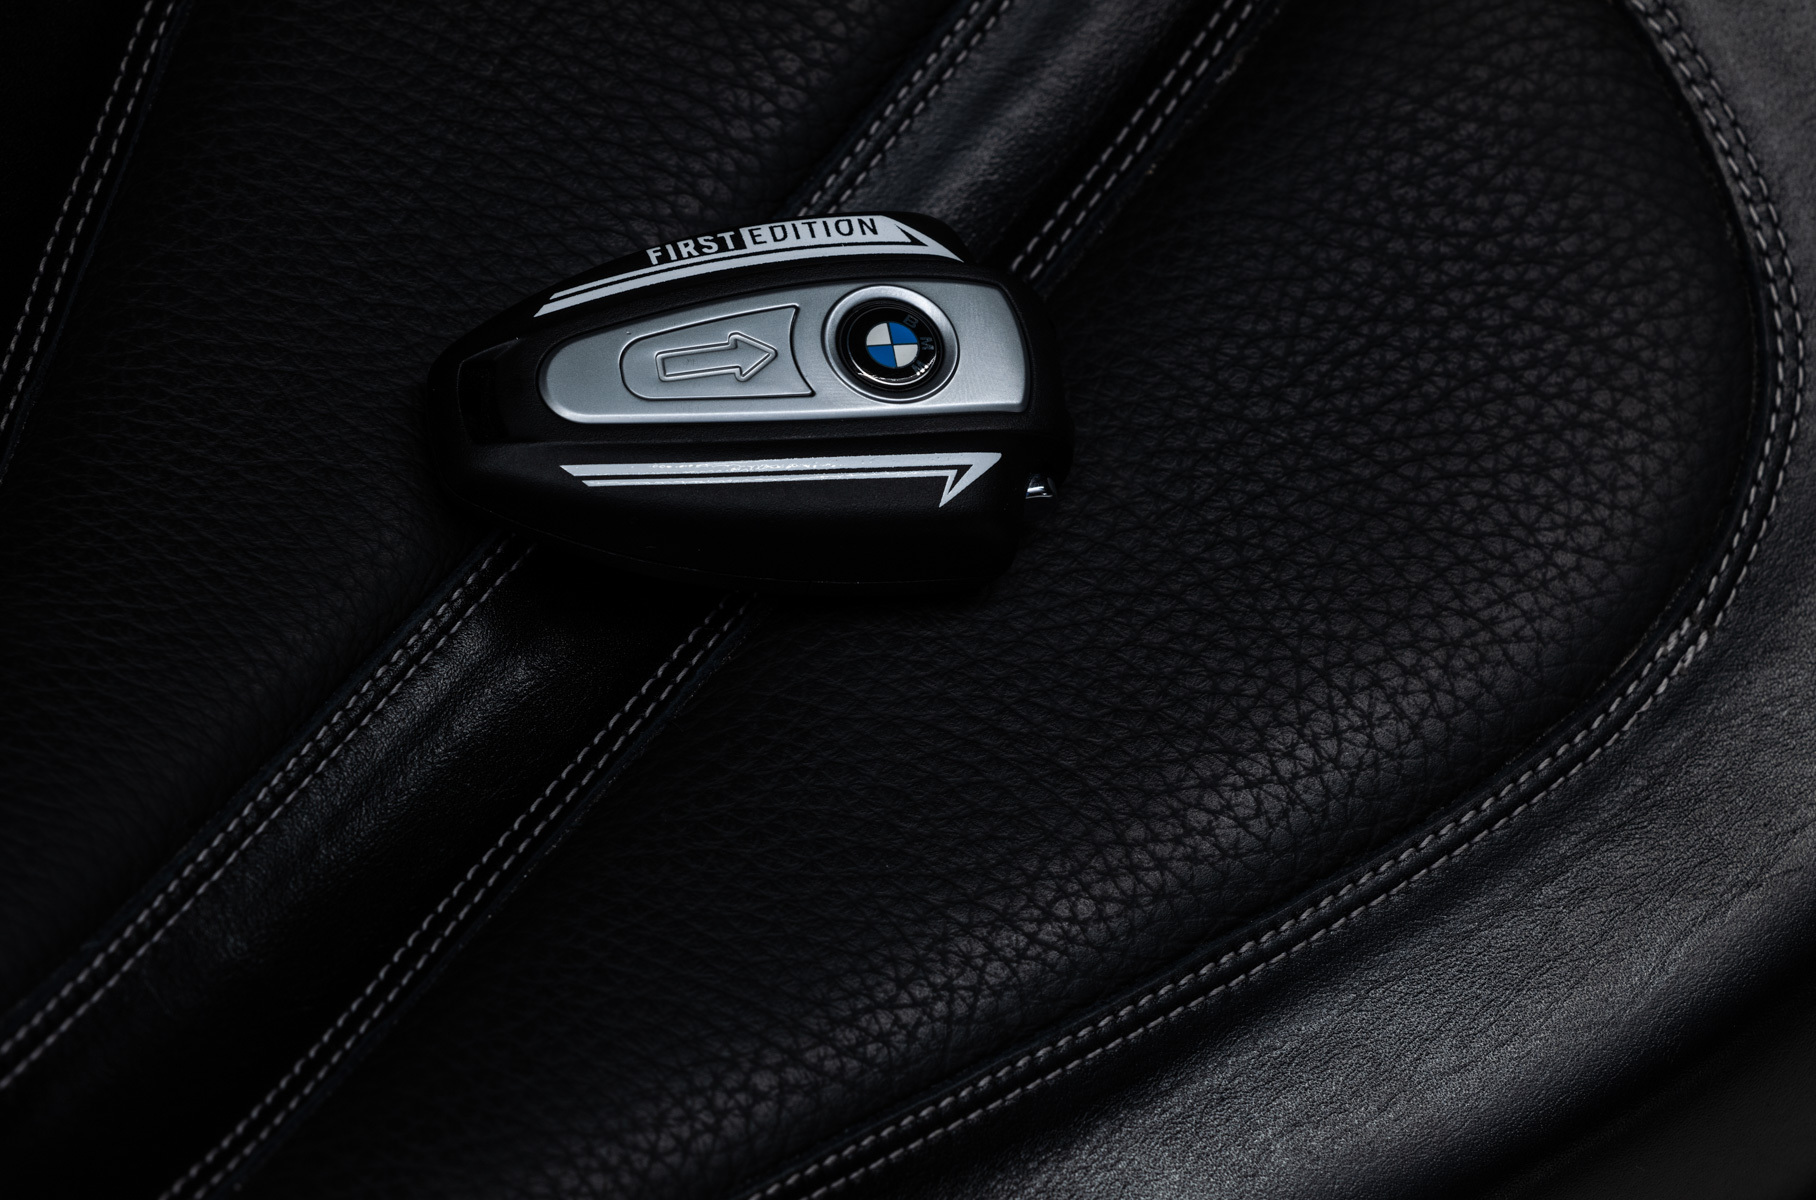 Рассмотрите в деталях невероятный кастом-байк «Дух страсти» на базе BMW R 18